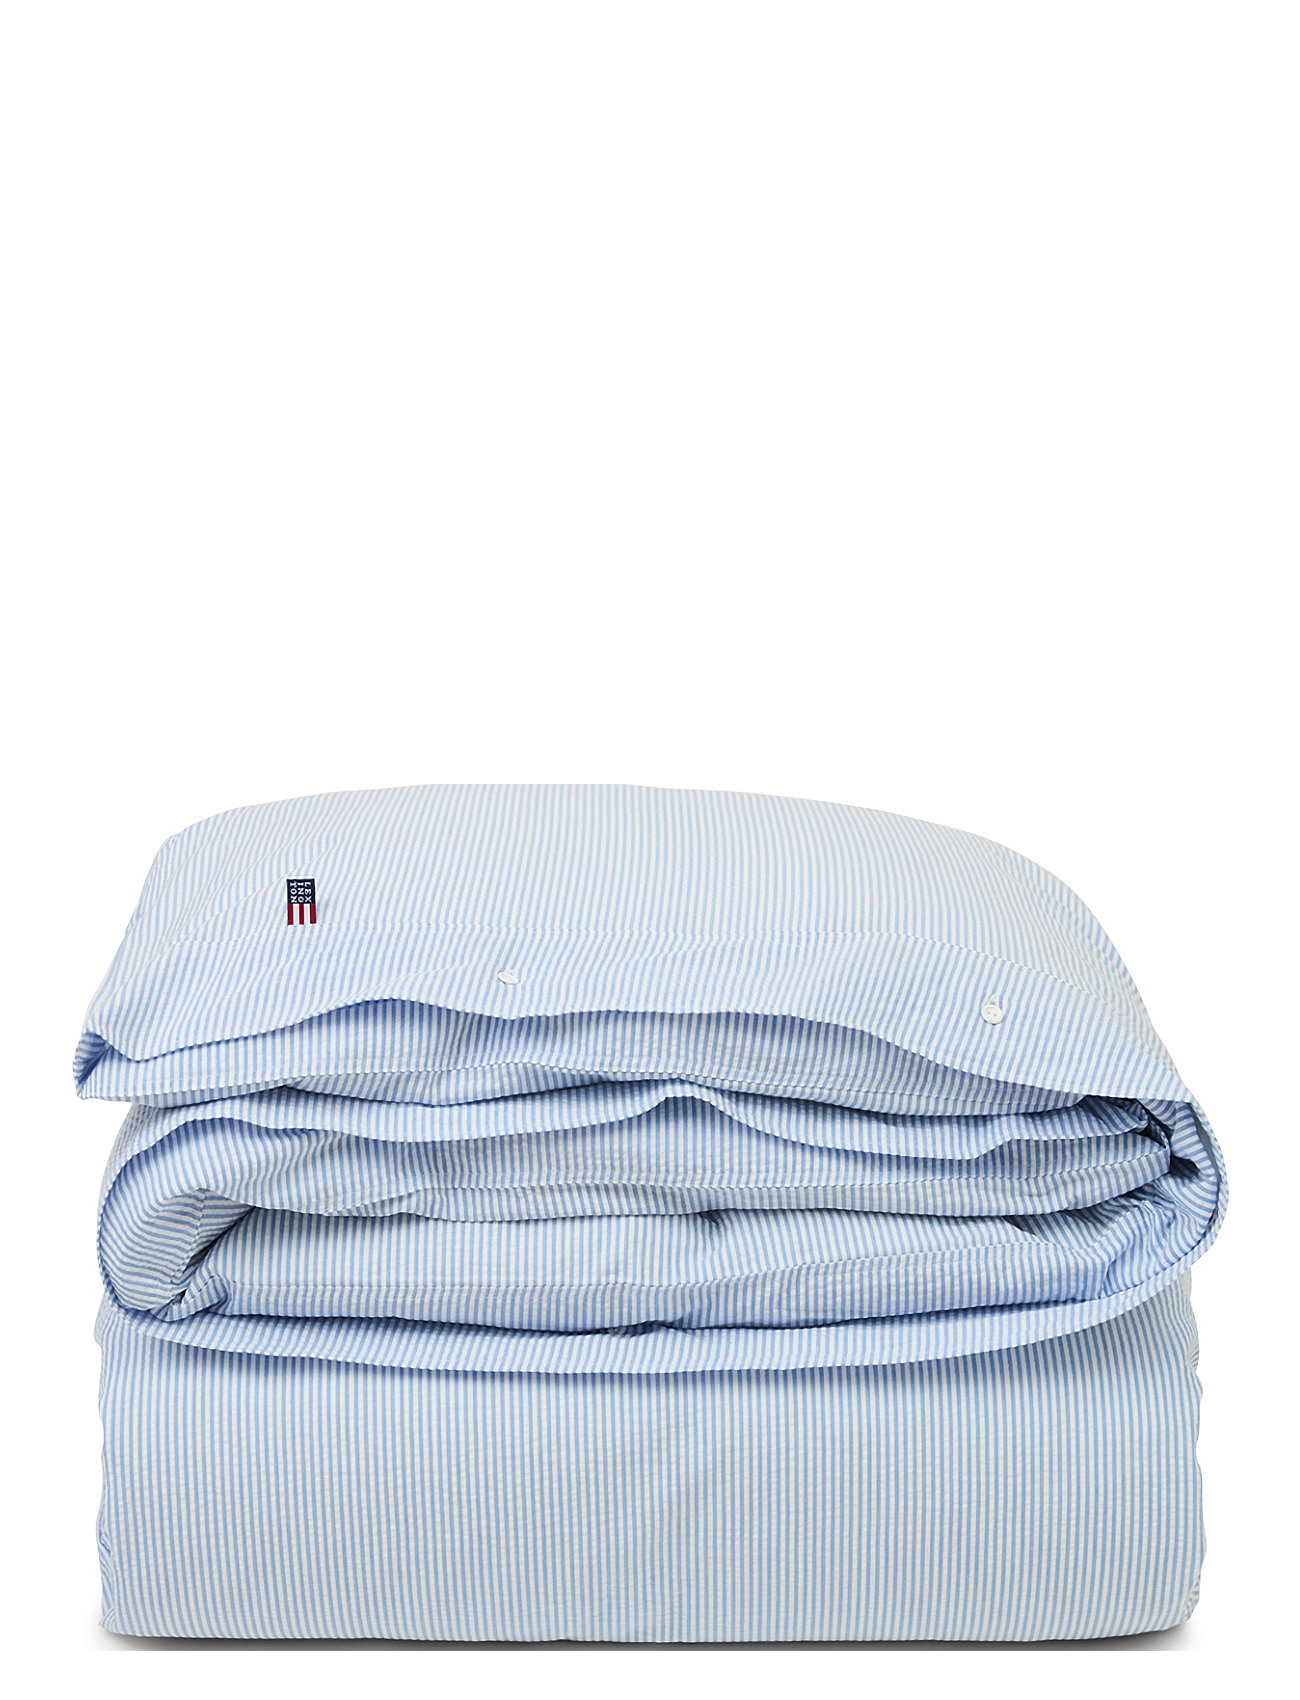 Blue/White Striped Cotton Seersucker Duvet Cover Home Textiles Bedtextiles Duvet Covers Blue Lexington Home